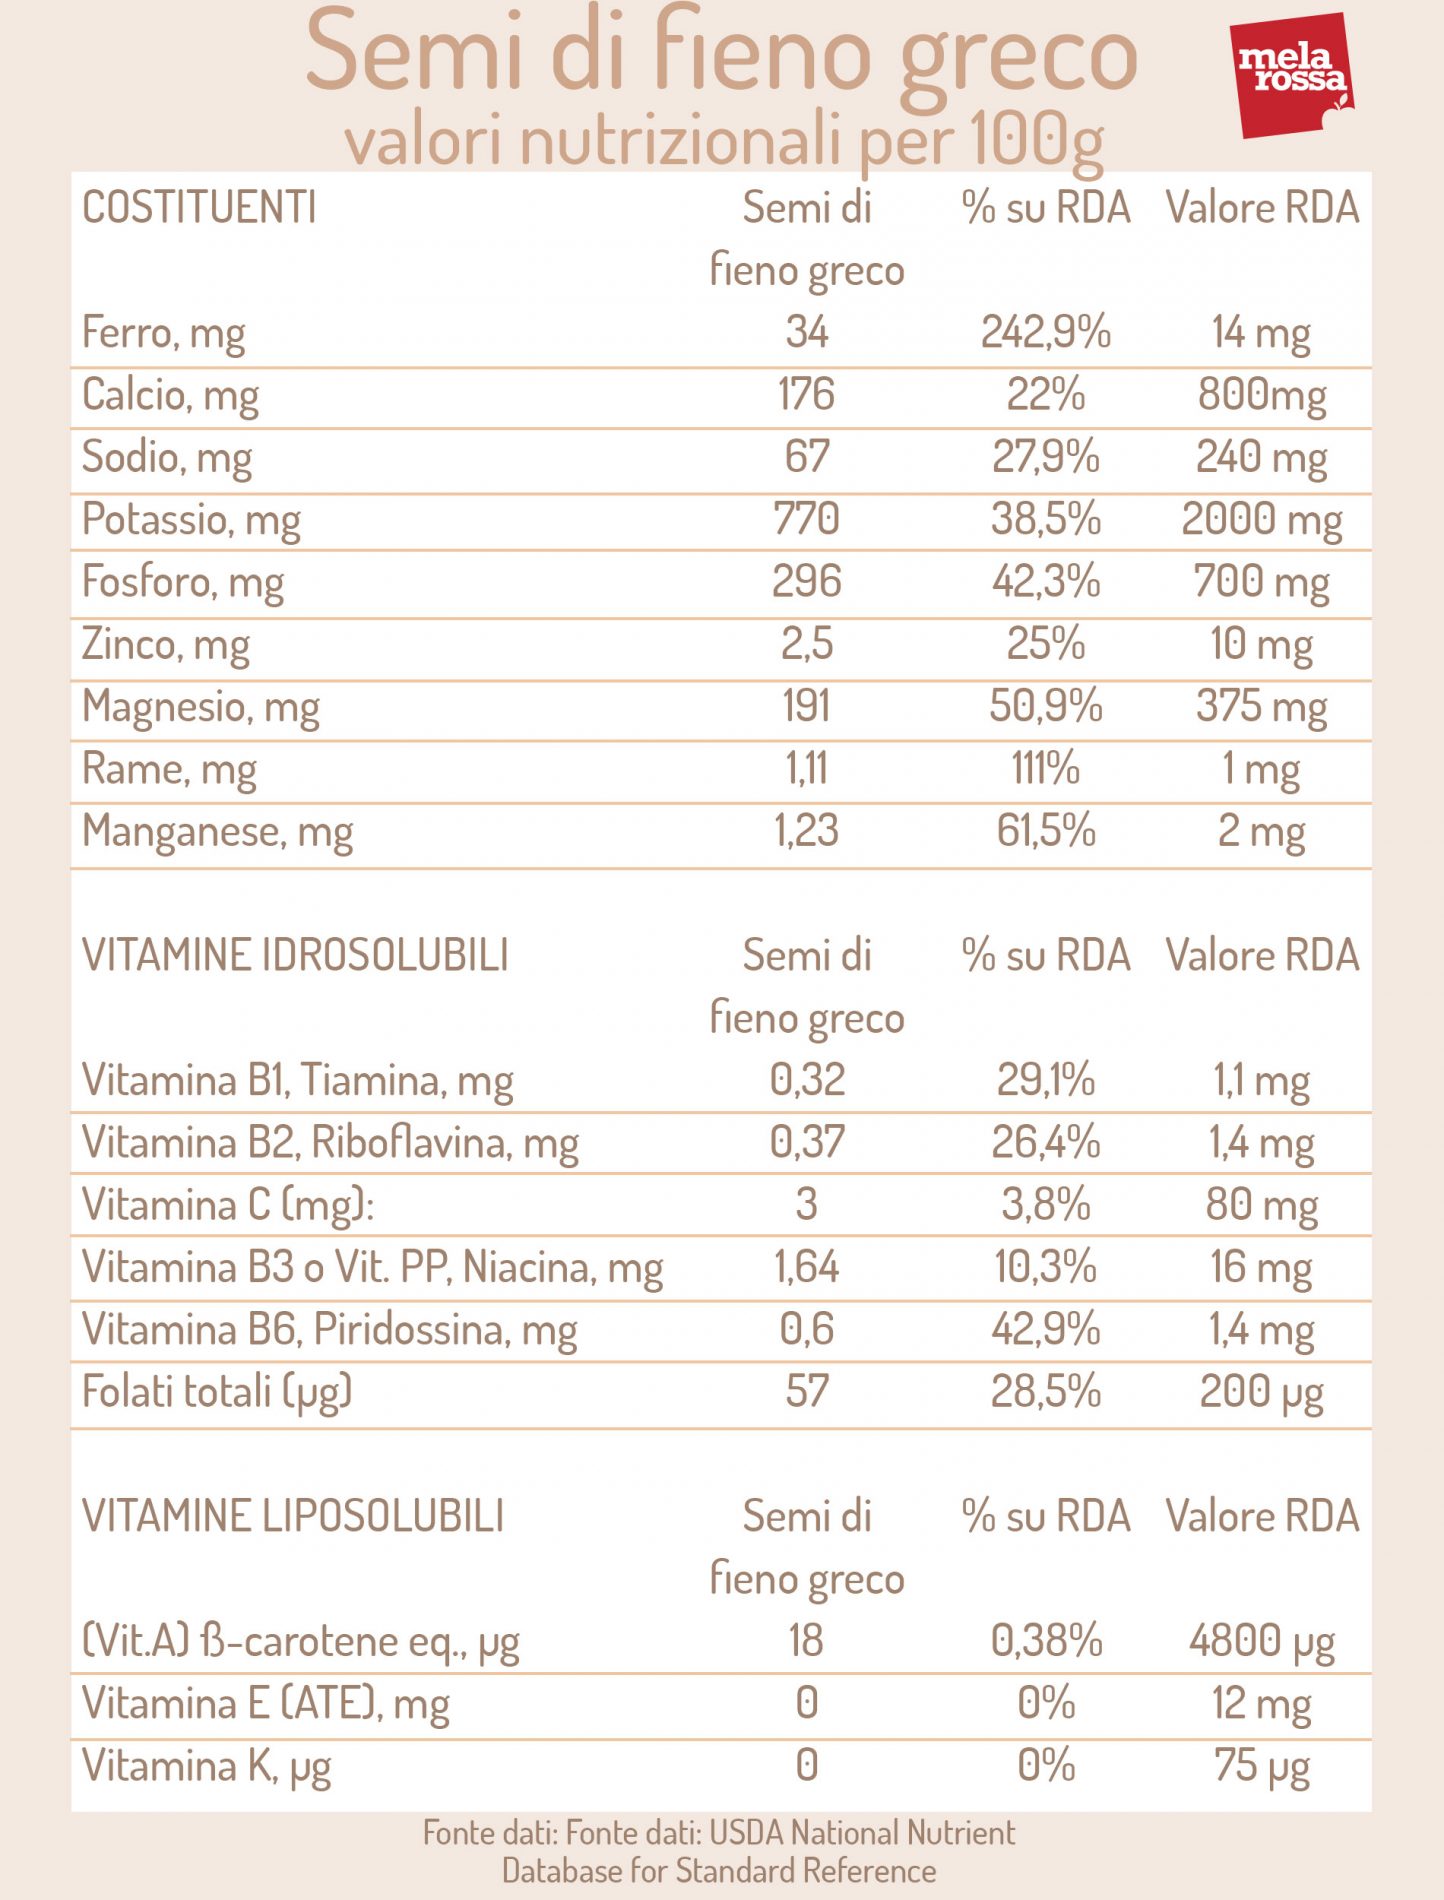 semi di fieno greco: valori nutrizionali